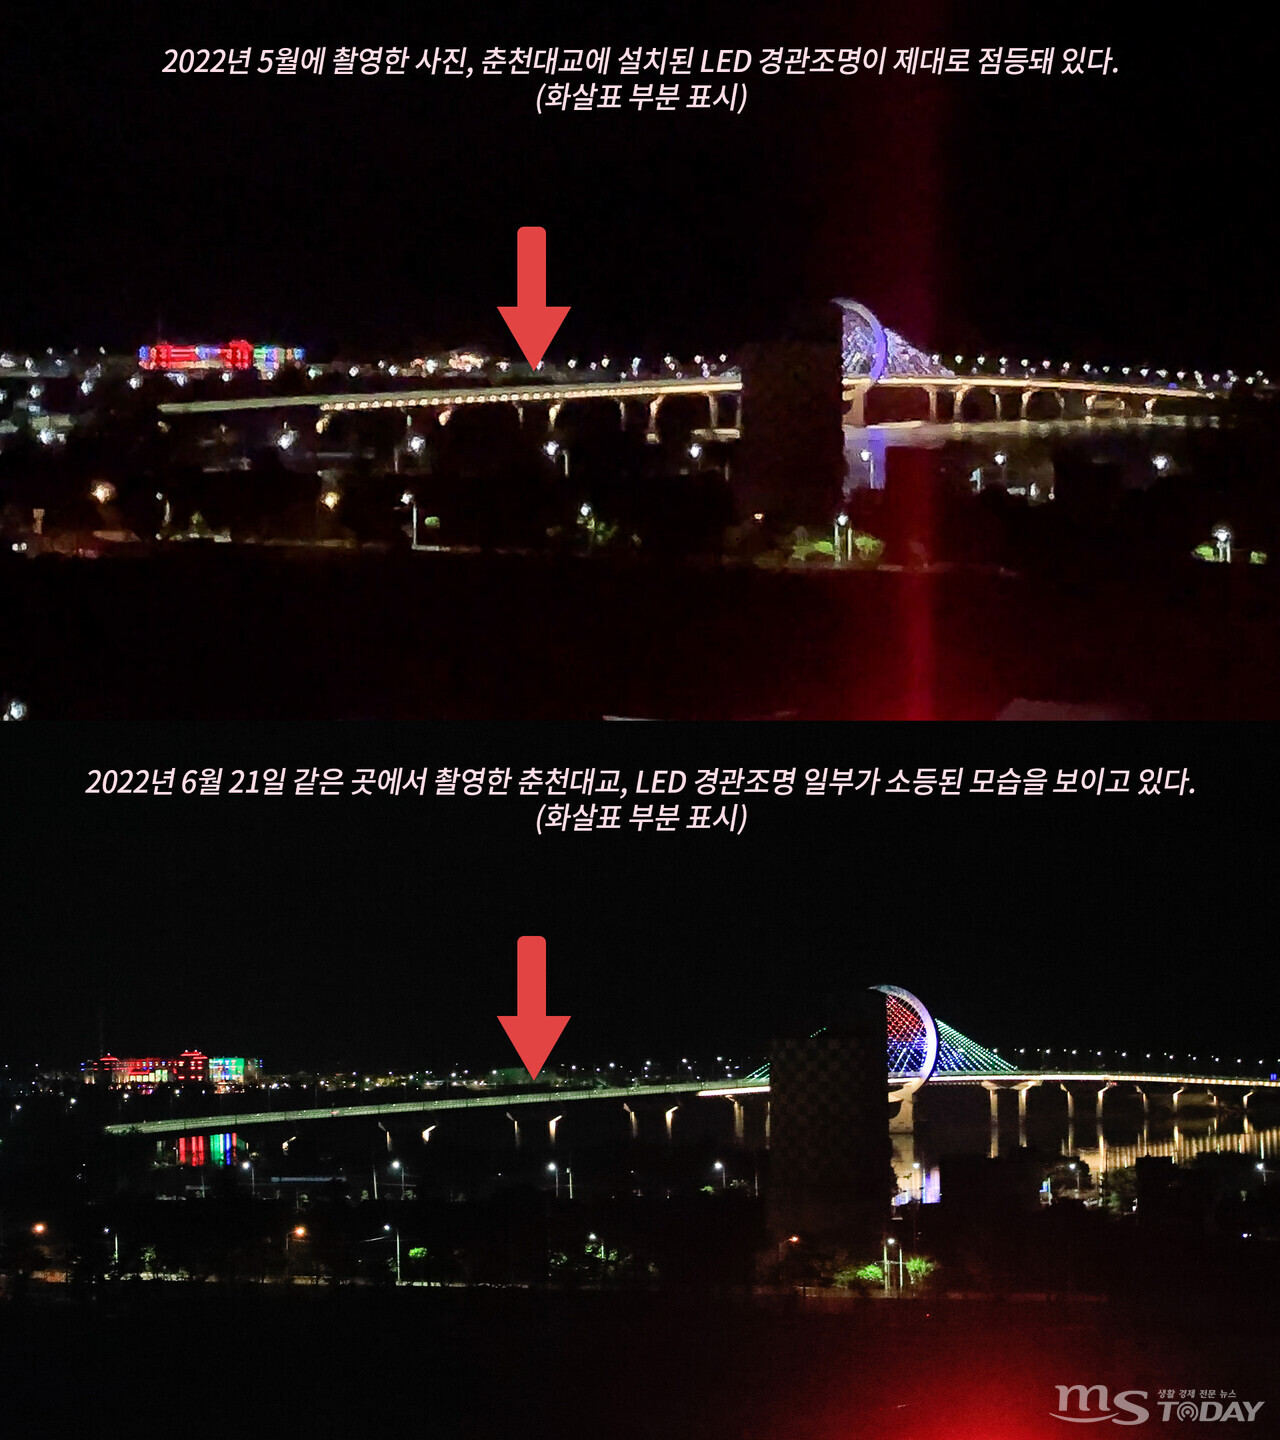 지난 5월 촬영된 춘천대교의 모습과 6월 21일 촬영된 춘천대교의 모습 비교